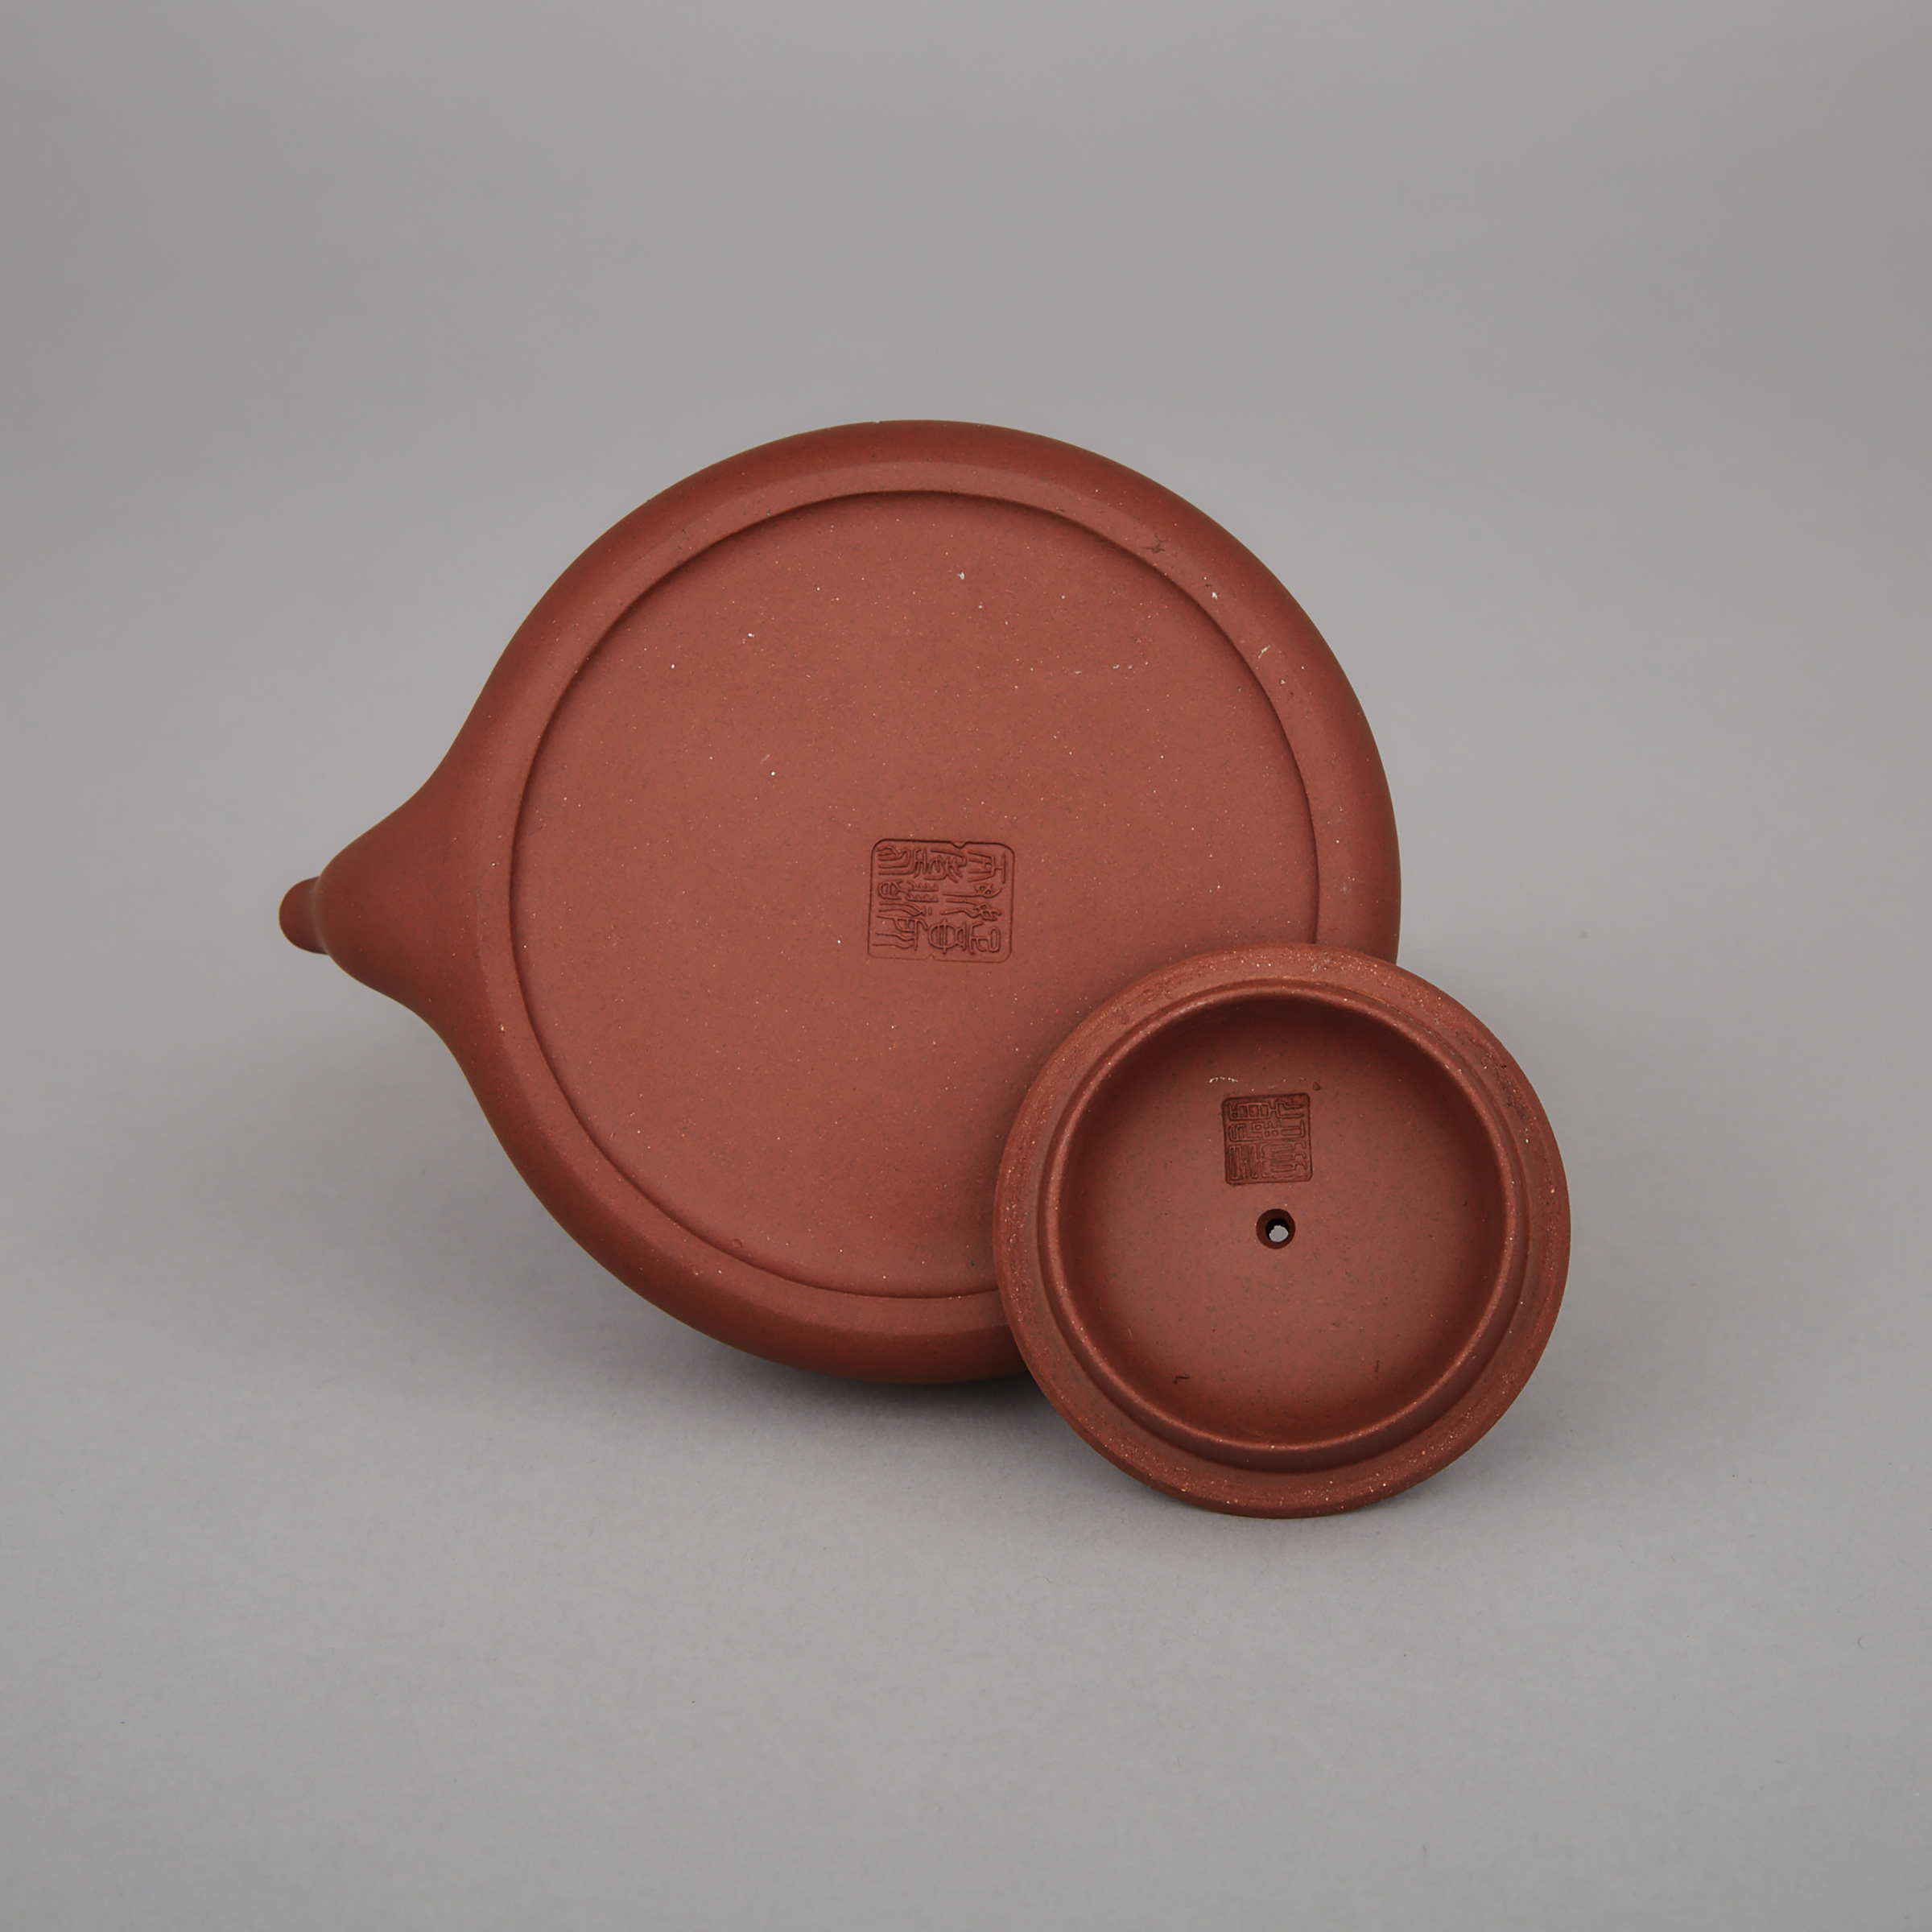 Gu Jingzhou (1915-1996), An Inscribed Yixing Stoneware Teapot and Cover